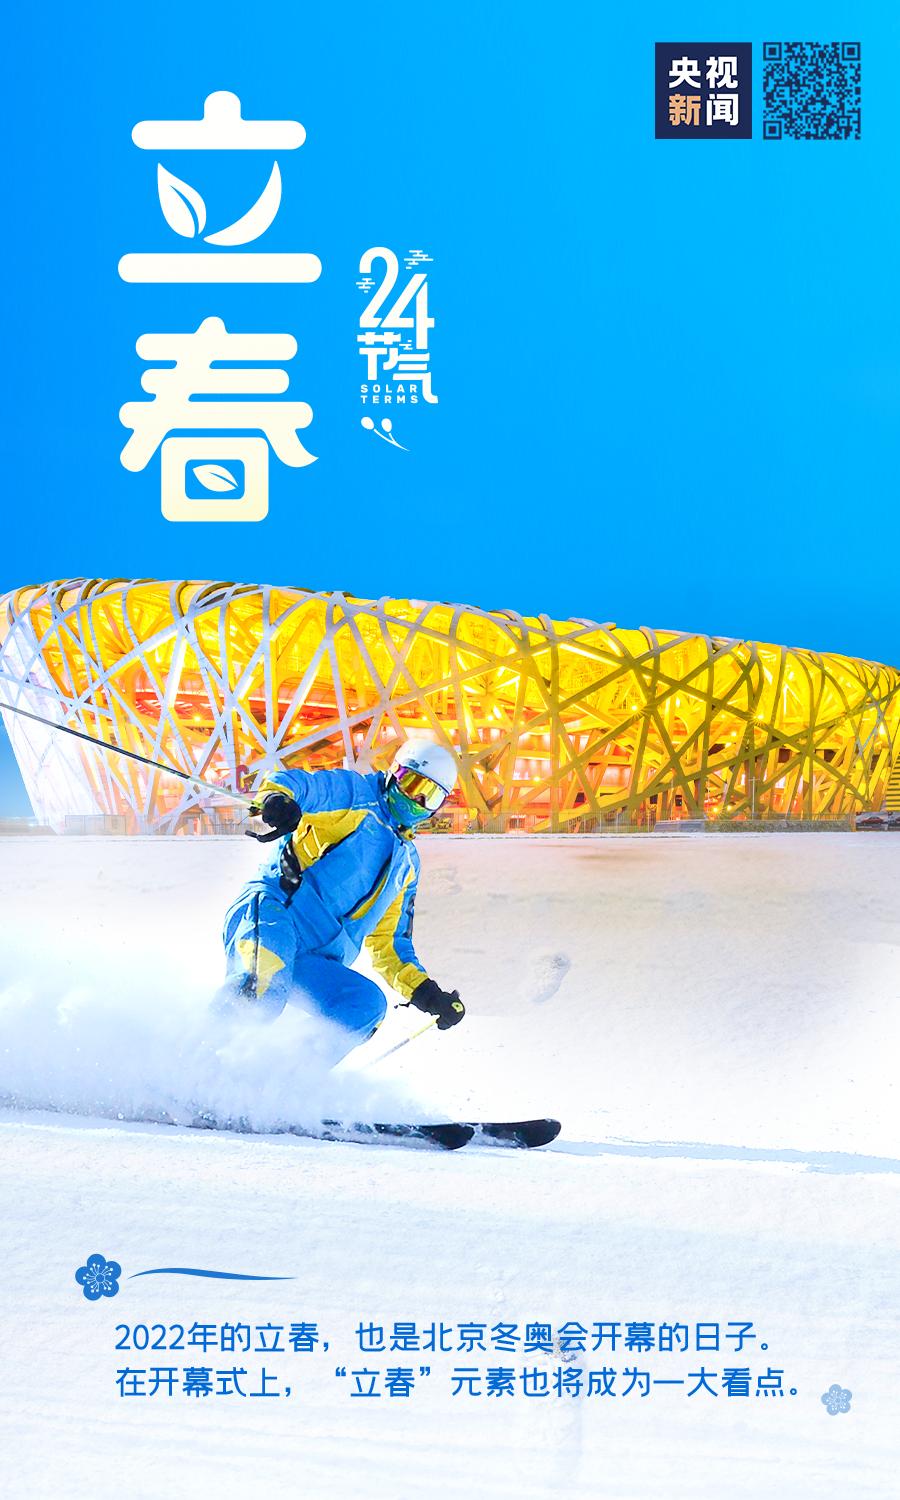 北京冬奥会立春图片图片